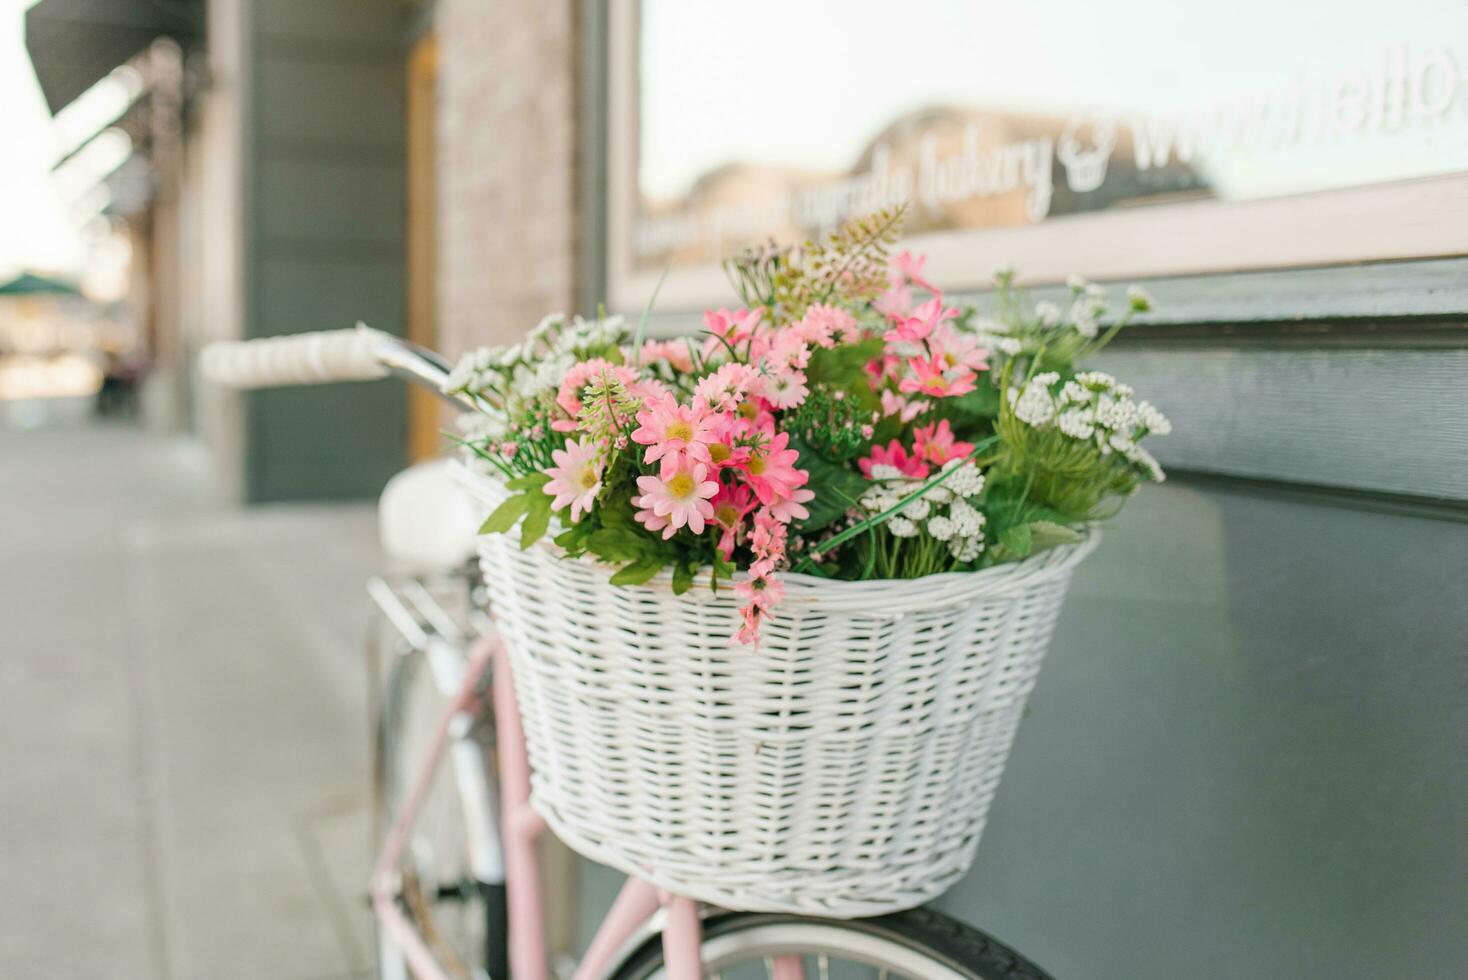 kunstmatig bloemen in de mand van een houten fiets in de buurt de stad cafe foto